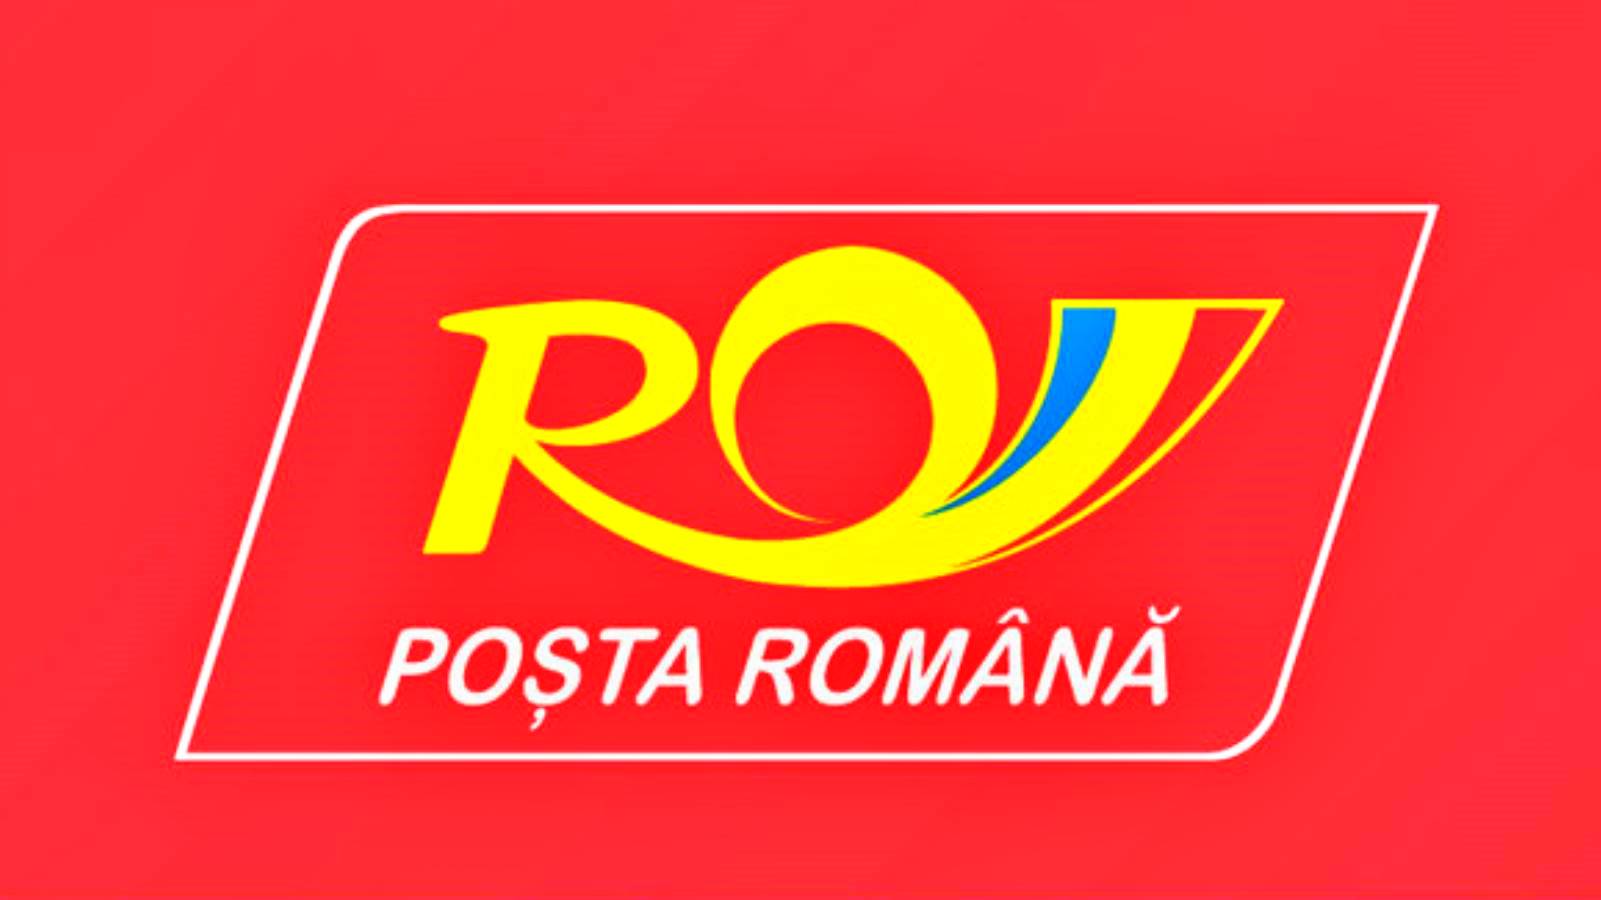 Roemeense schriftelijke bevestiging van postbezorging